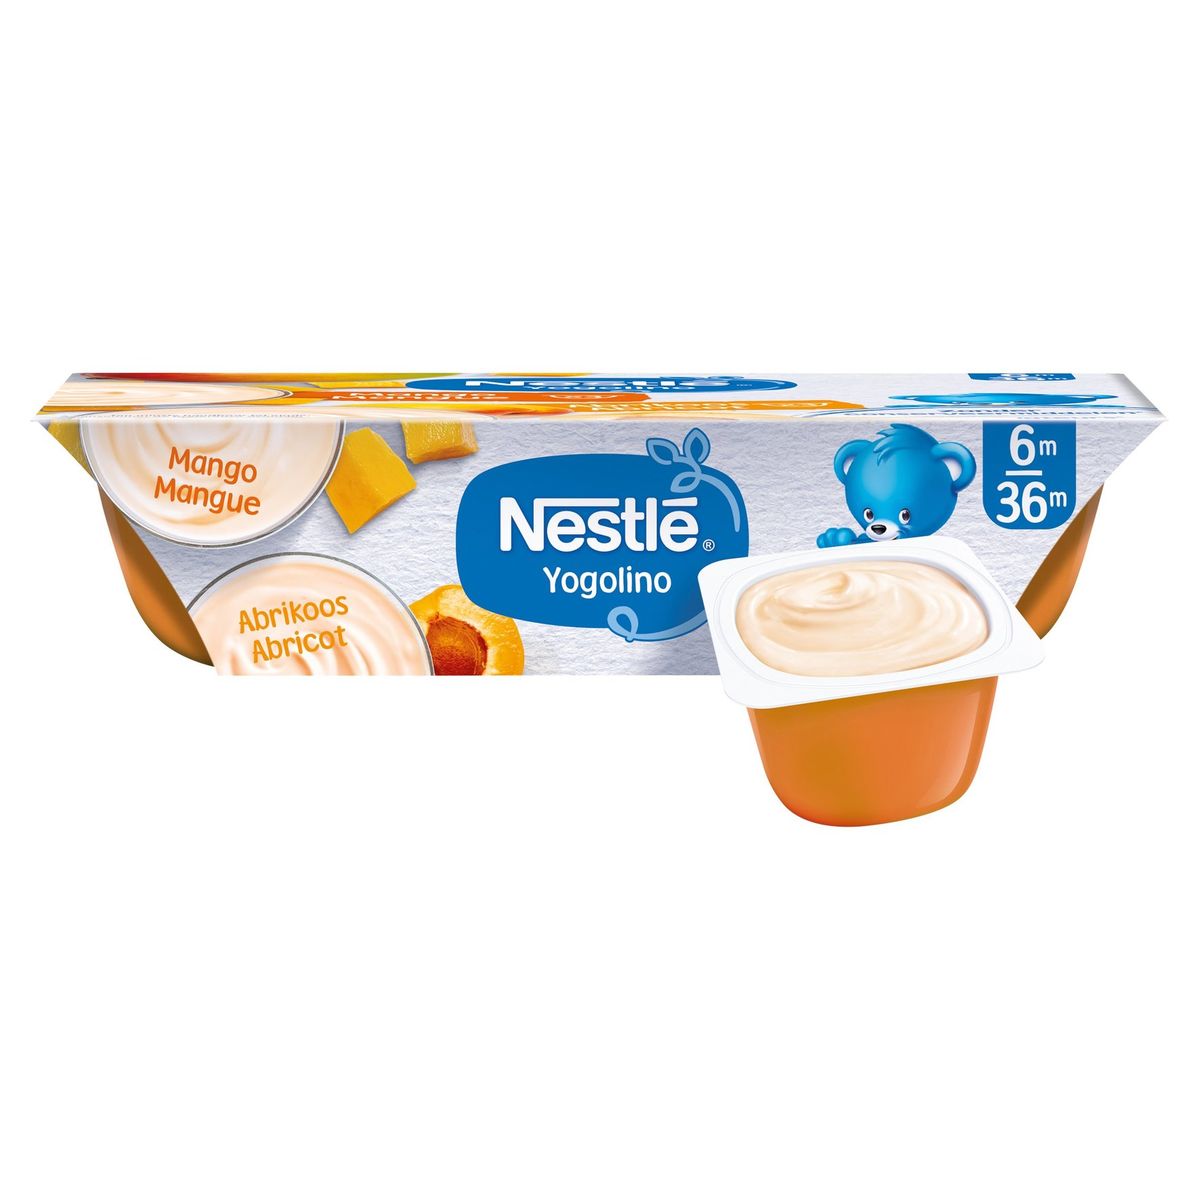 Nestlé Yogolino Laitage Mangue Abricot dès 6 mois 6x60g